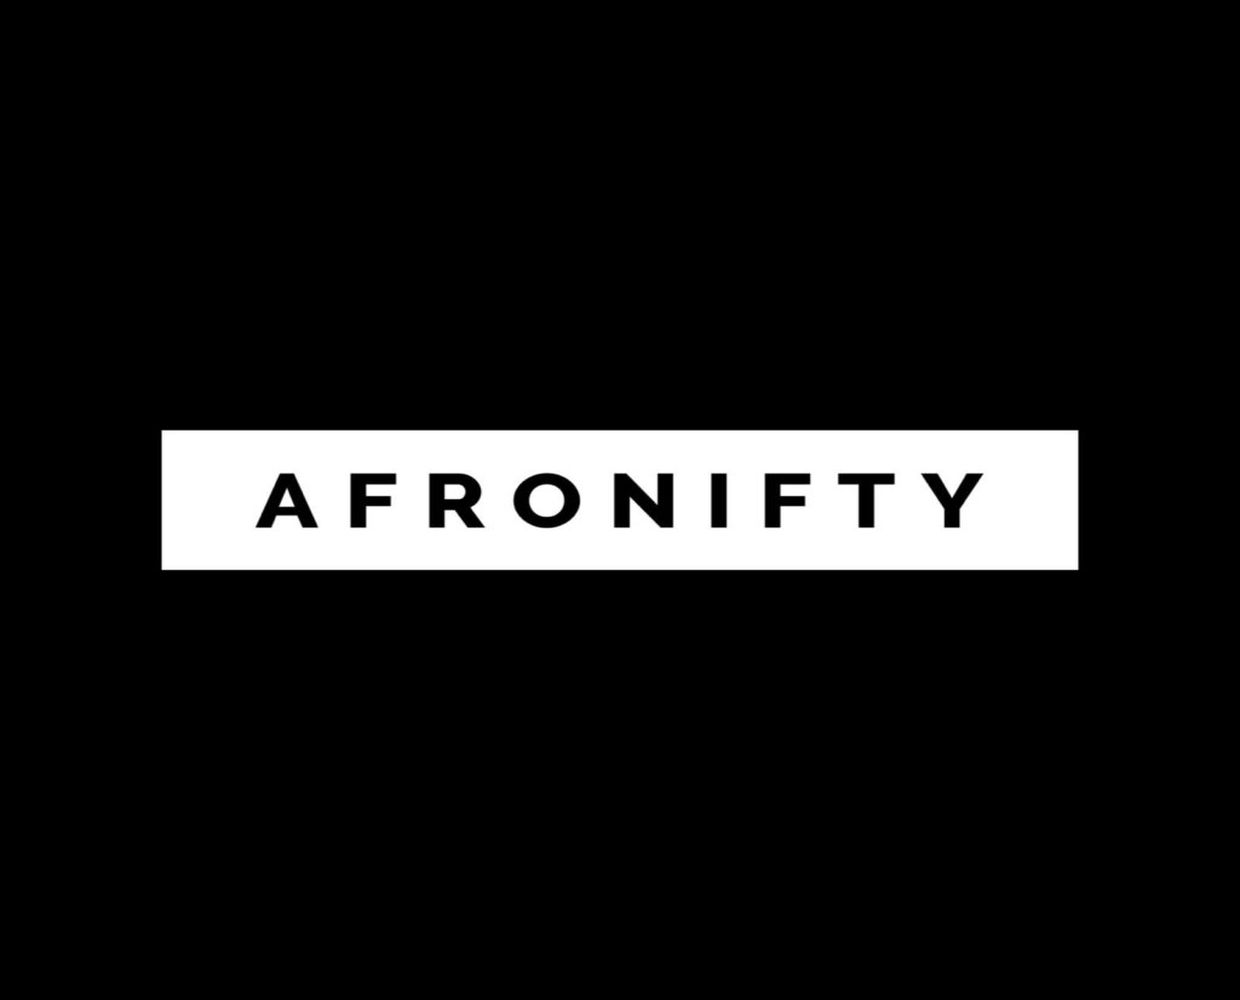 Como o Afronifty aproveitou a ascensão do Afrobeats para se tornar o maior mercado NFT da África?